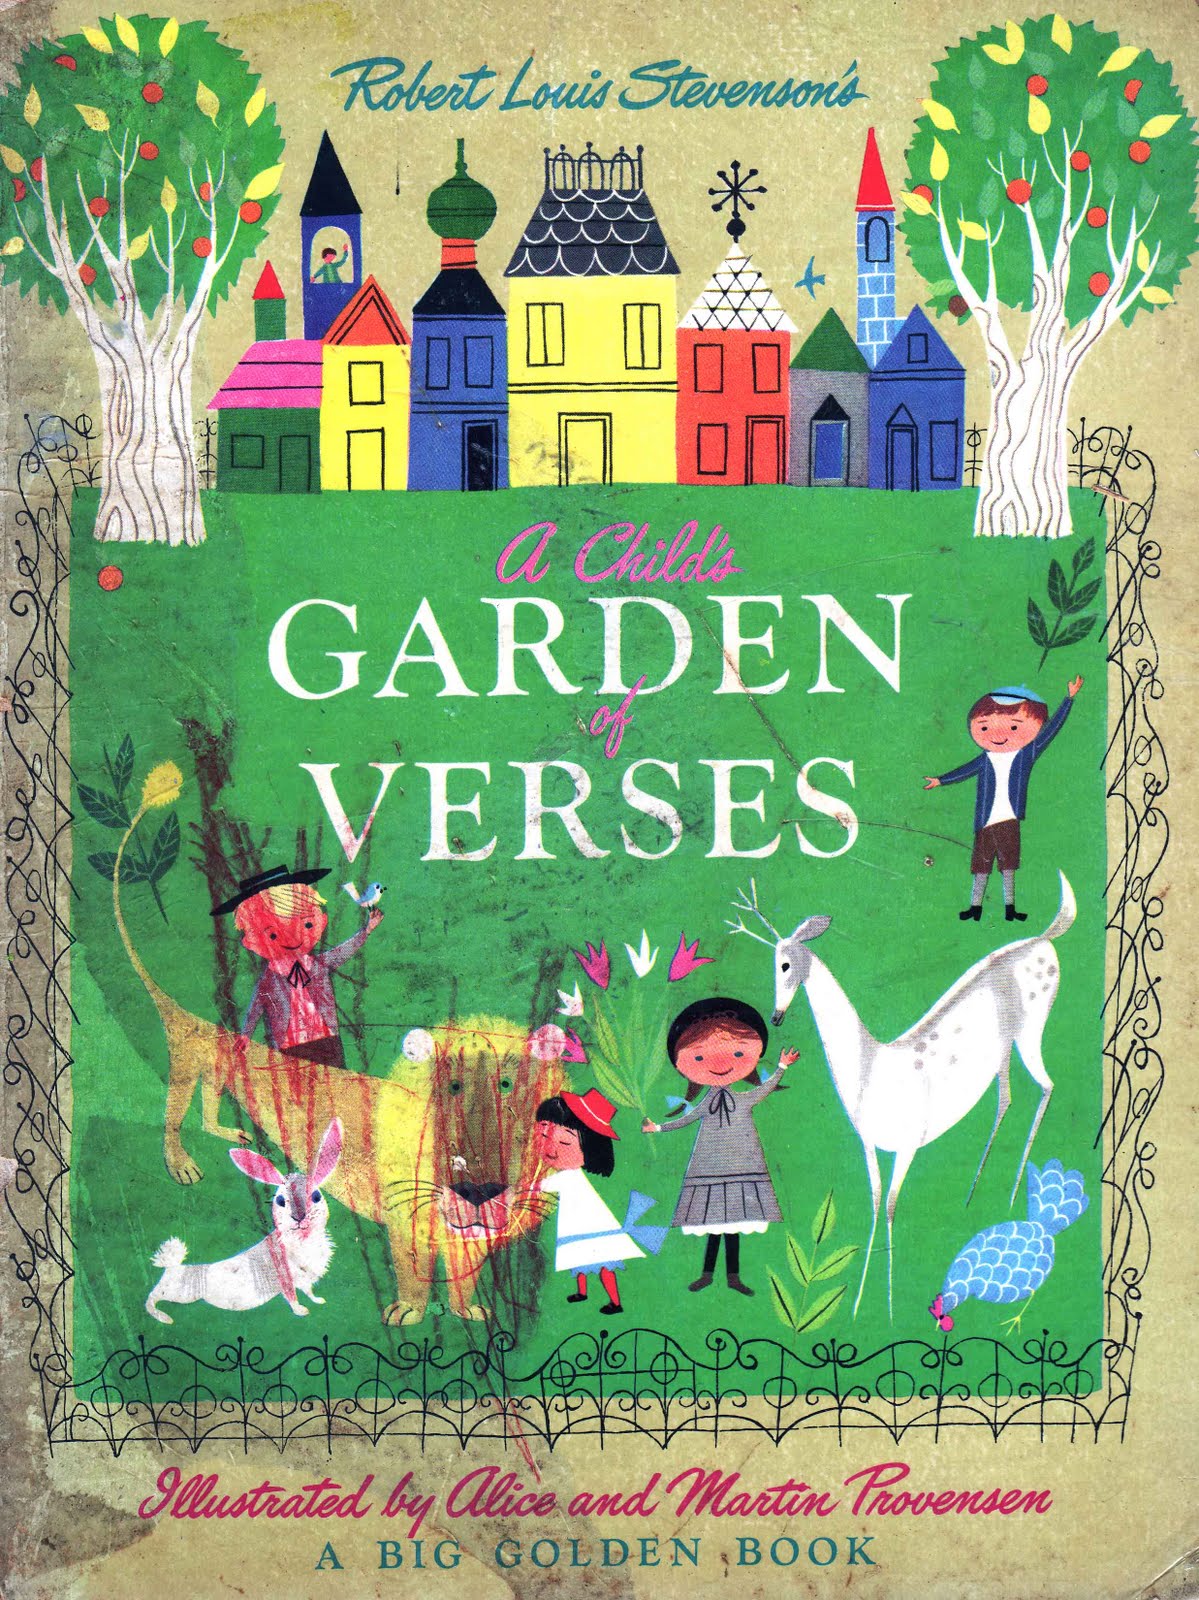 1916 "A Child's Garden of Verses" written by Robert